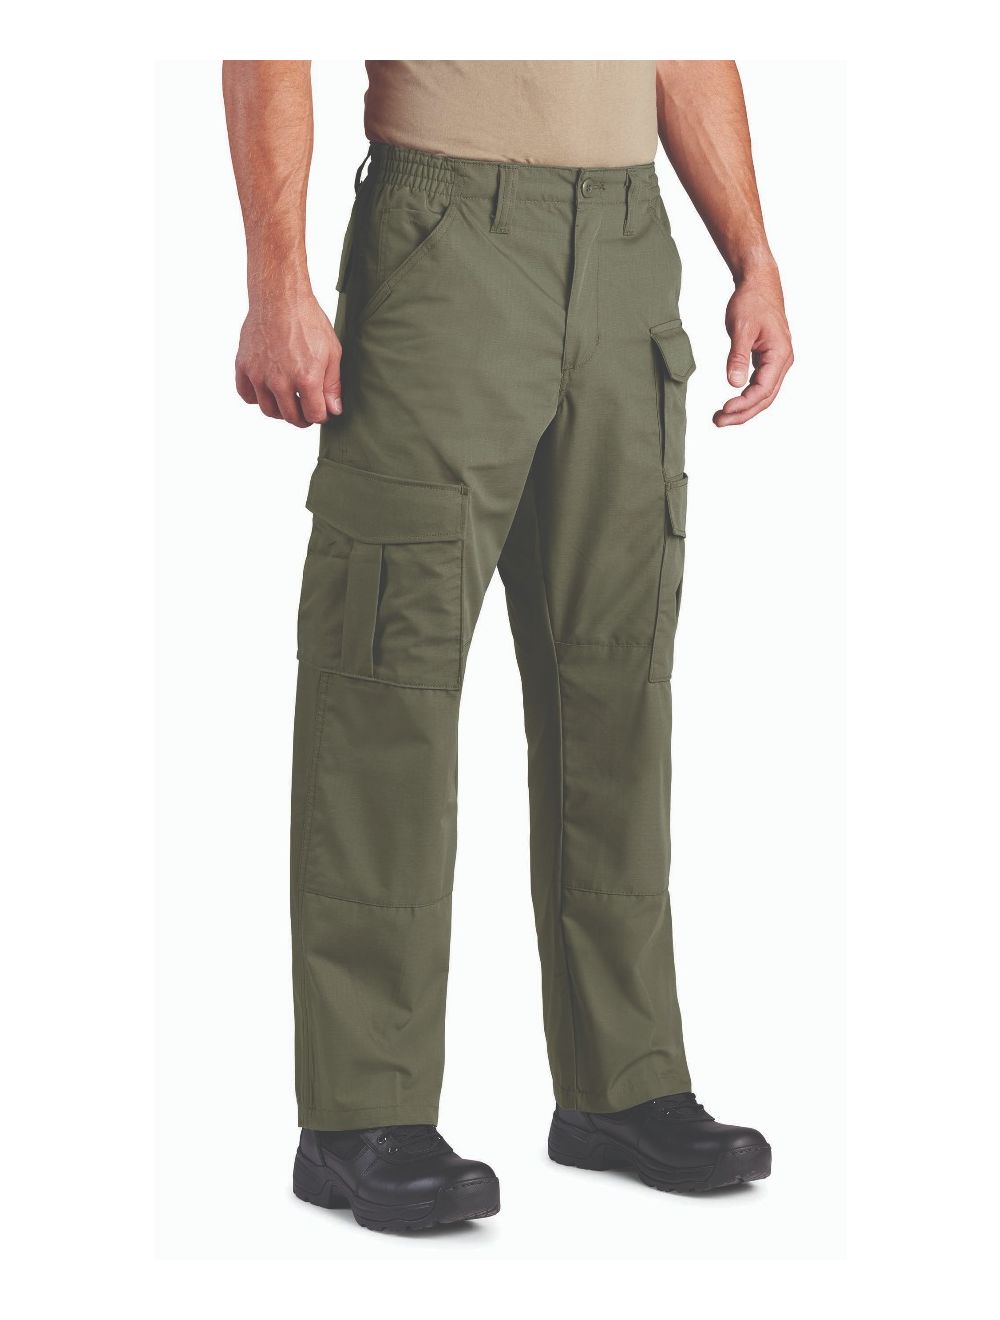 Propper F5251-25 Uniform Tactical Pants - Cotton/Poly Ripstop